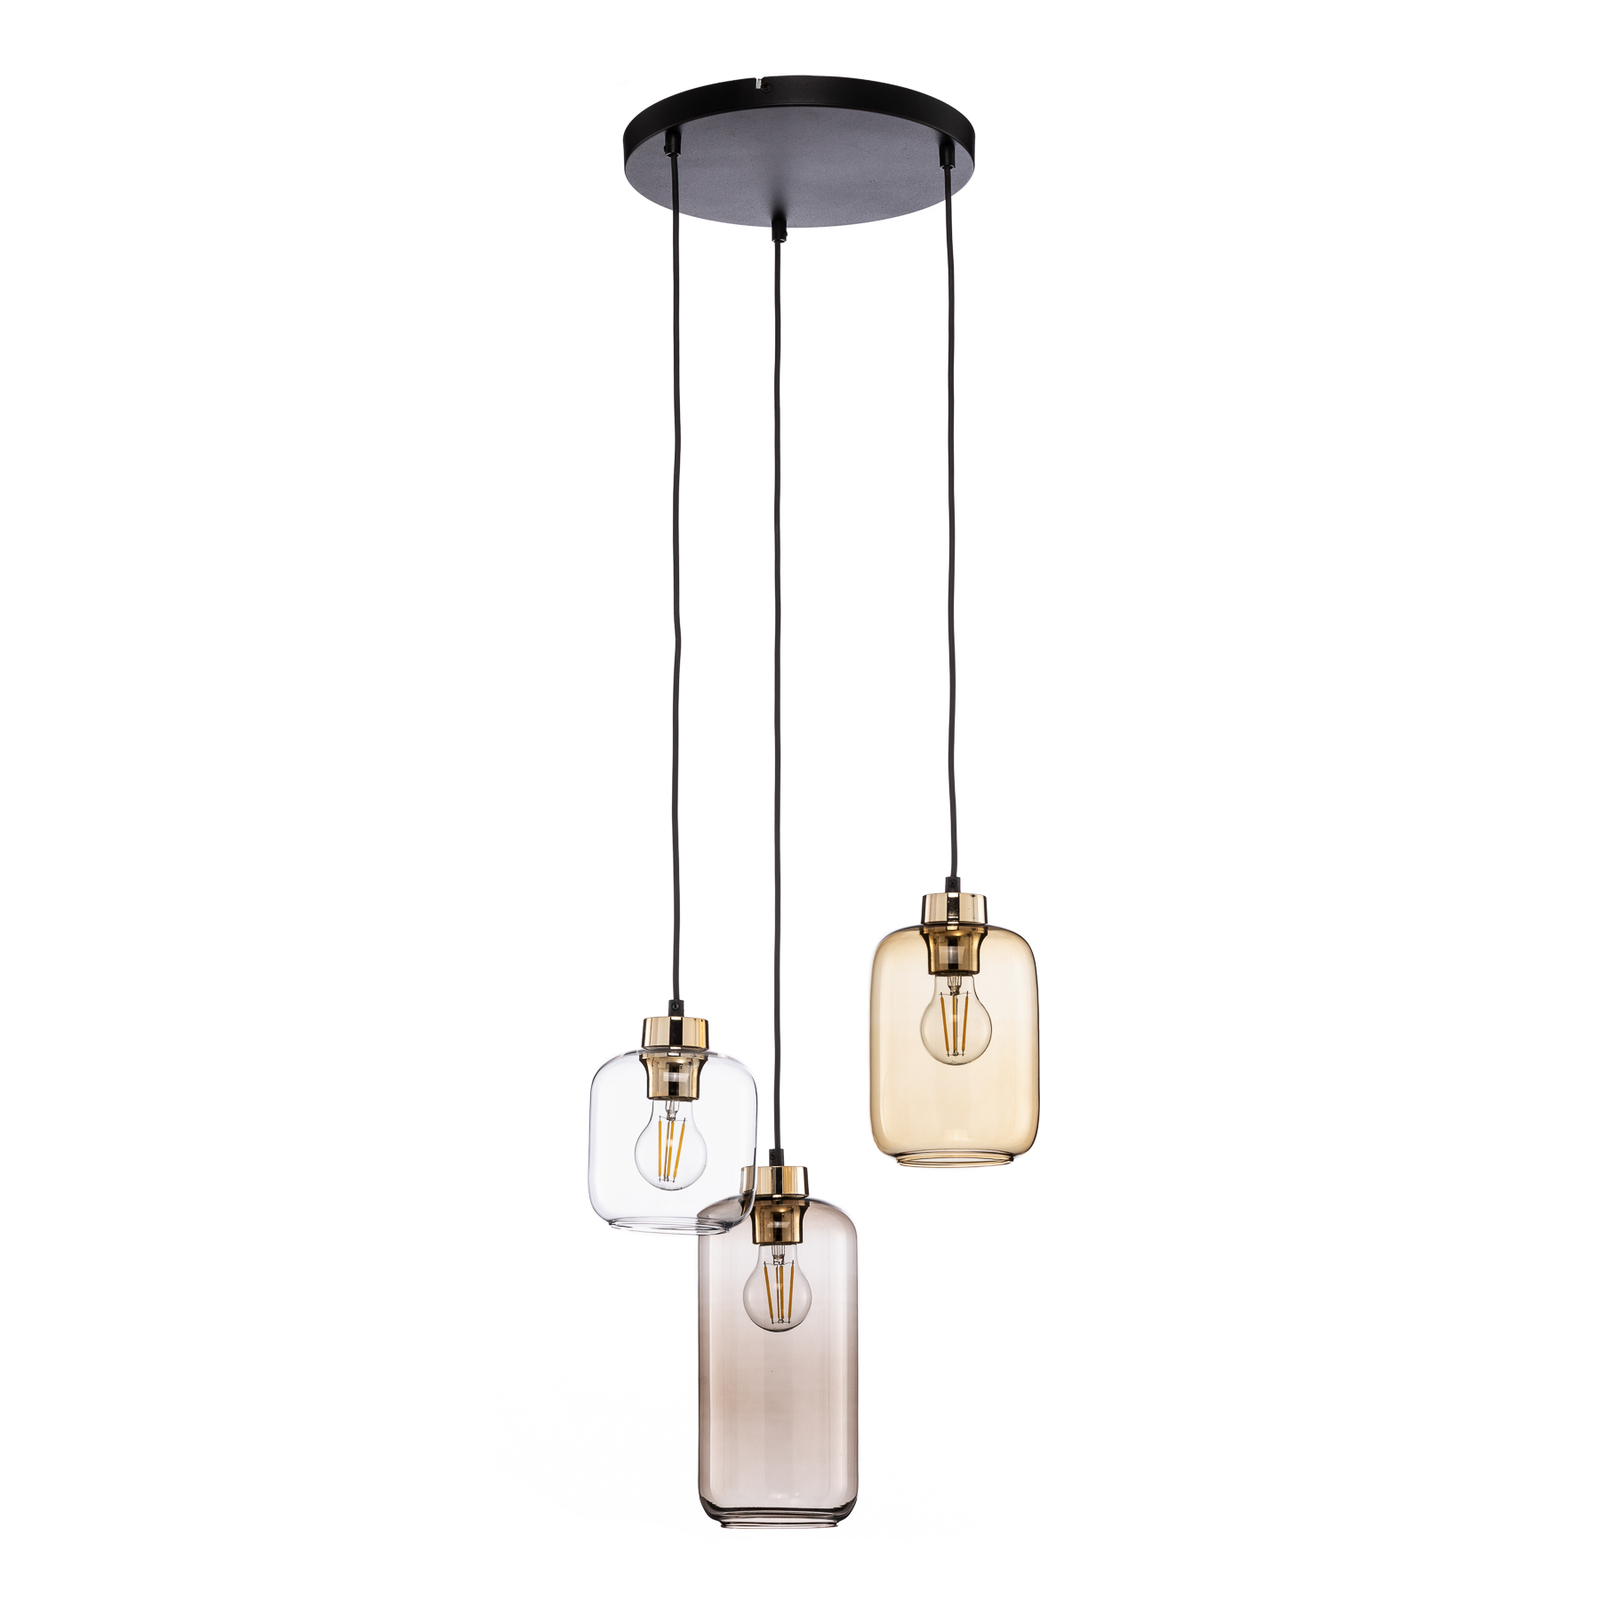 Marco Brown hanglamp, 3-lamps, helder/bruin